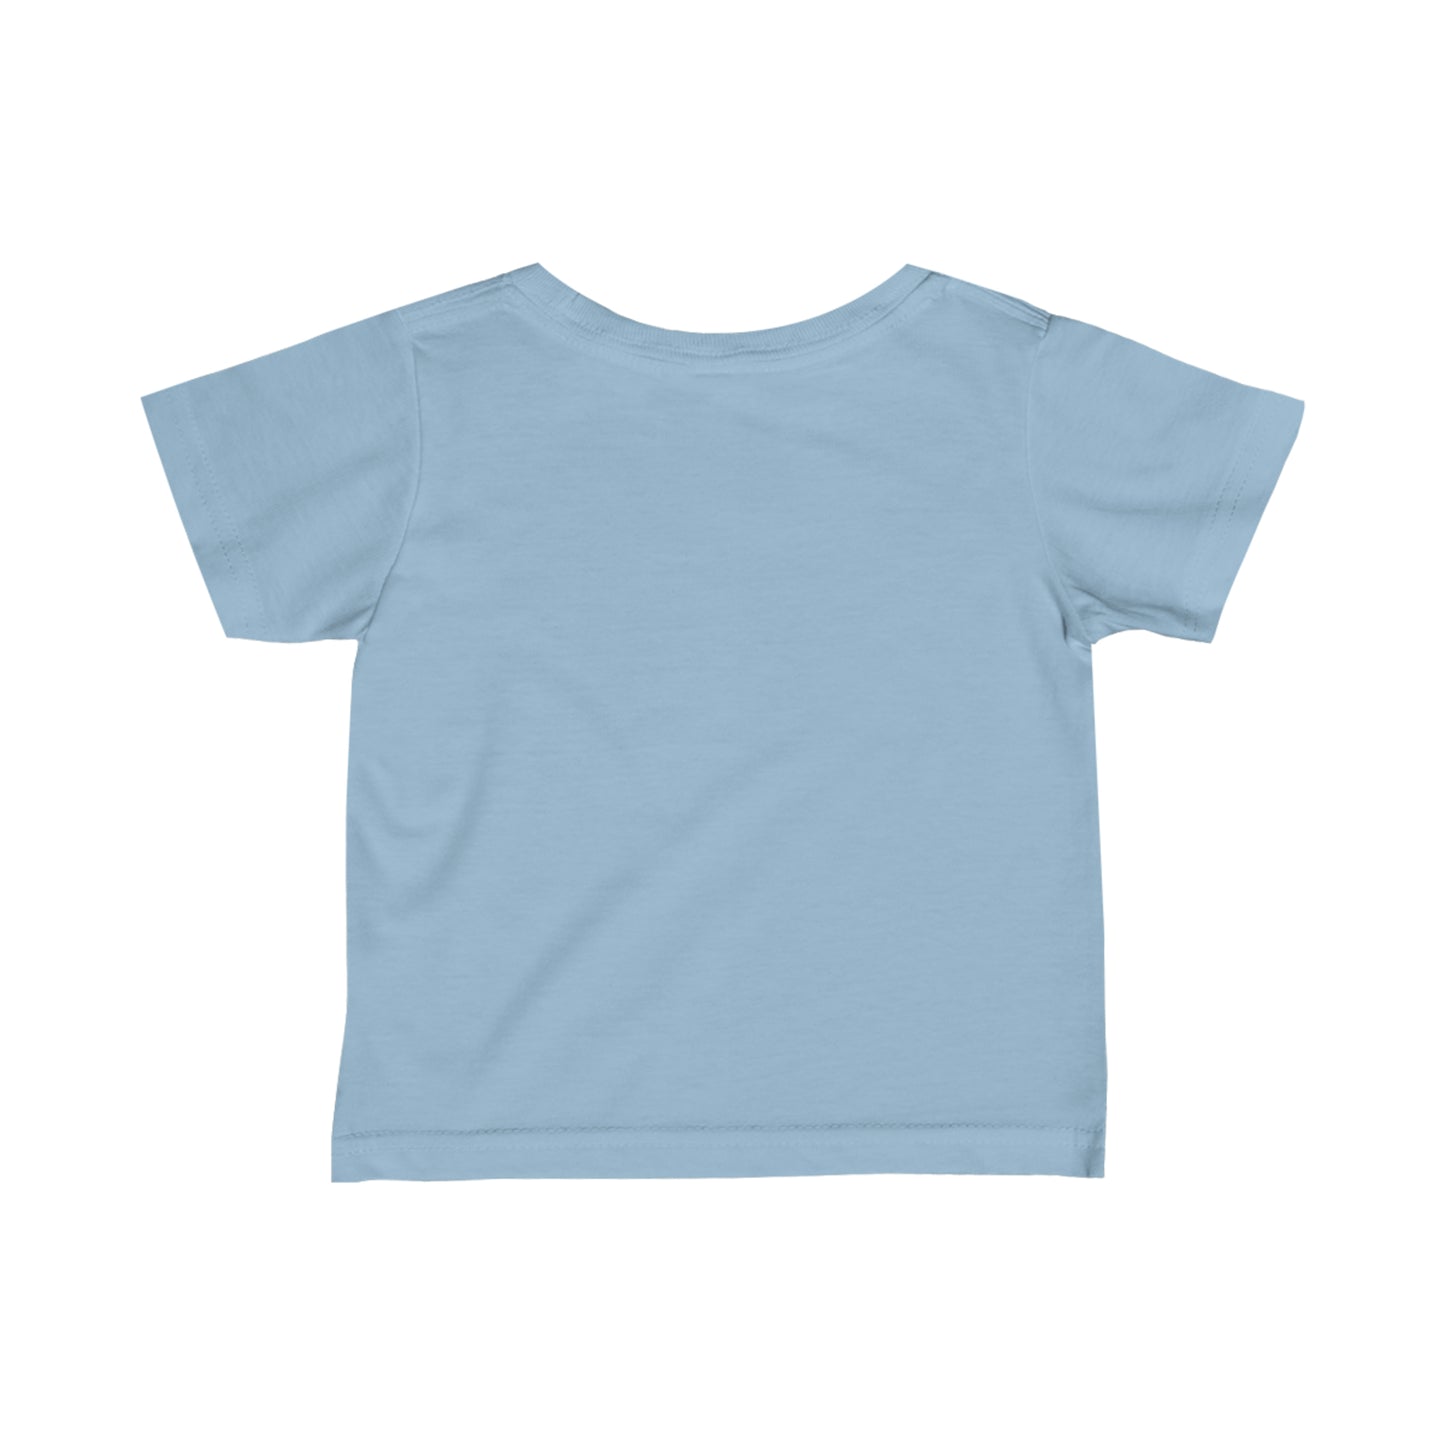 David Glitched Infant T-Shirt